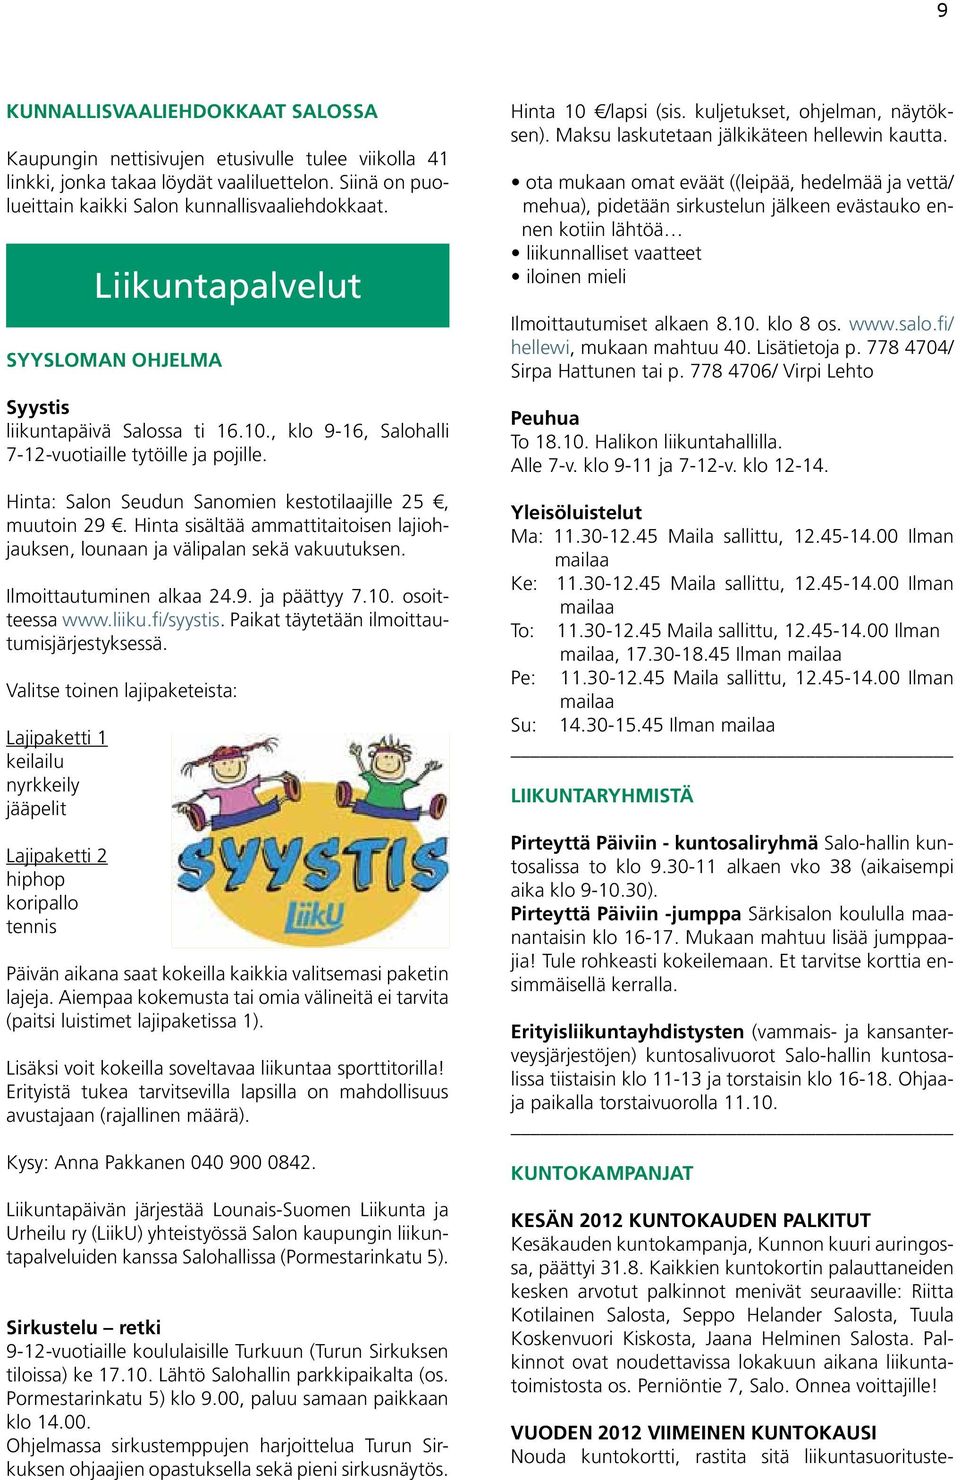 Hinta sisältää ammattitaitoisen lajiohjauksen, lounaan ja välipalan sekä vakuutuksen. Ilmoittautuminen alkaa 24.9. ja päättyy 7.10. osoitteessa www.liiku.fi/syystis.